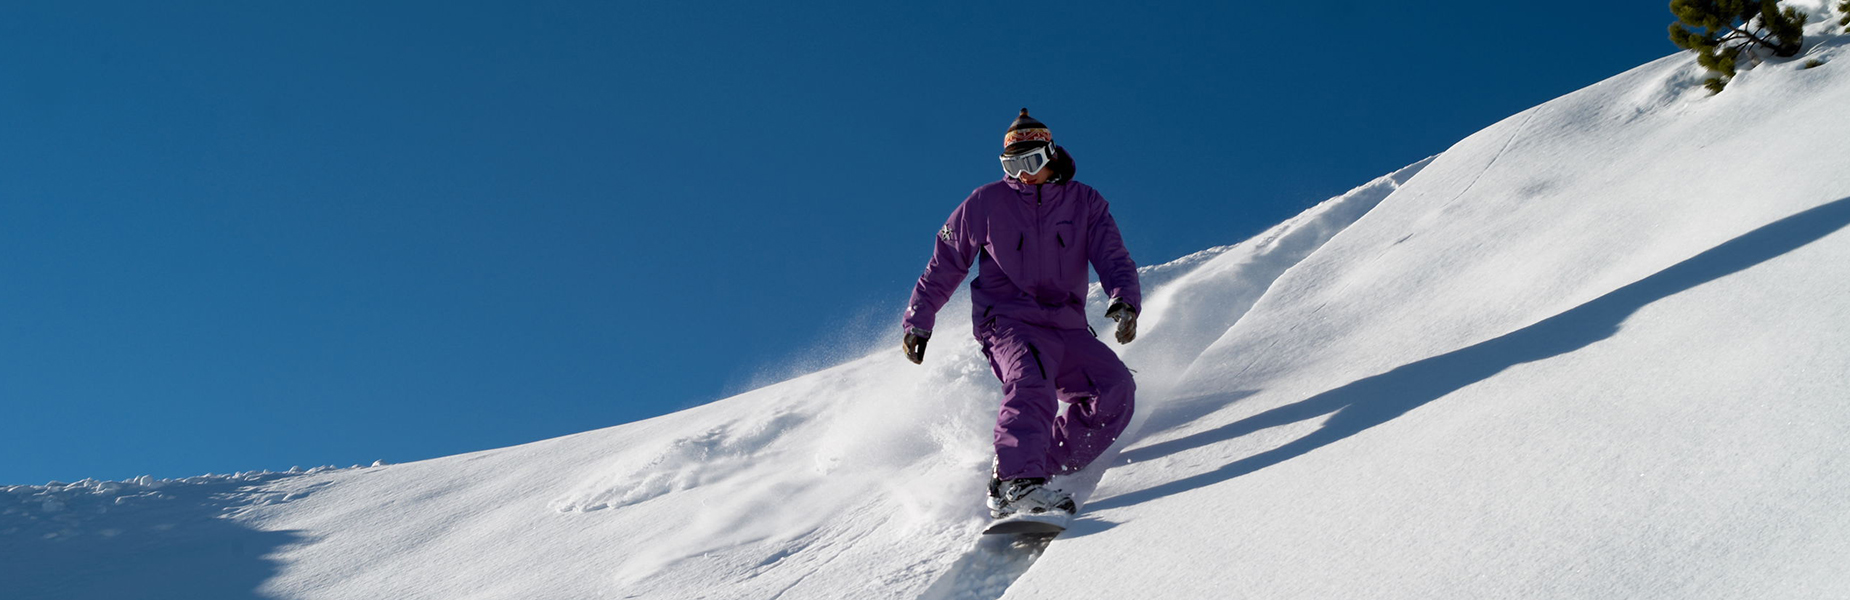 Snowboardkursedirekt online buchen